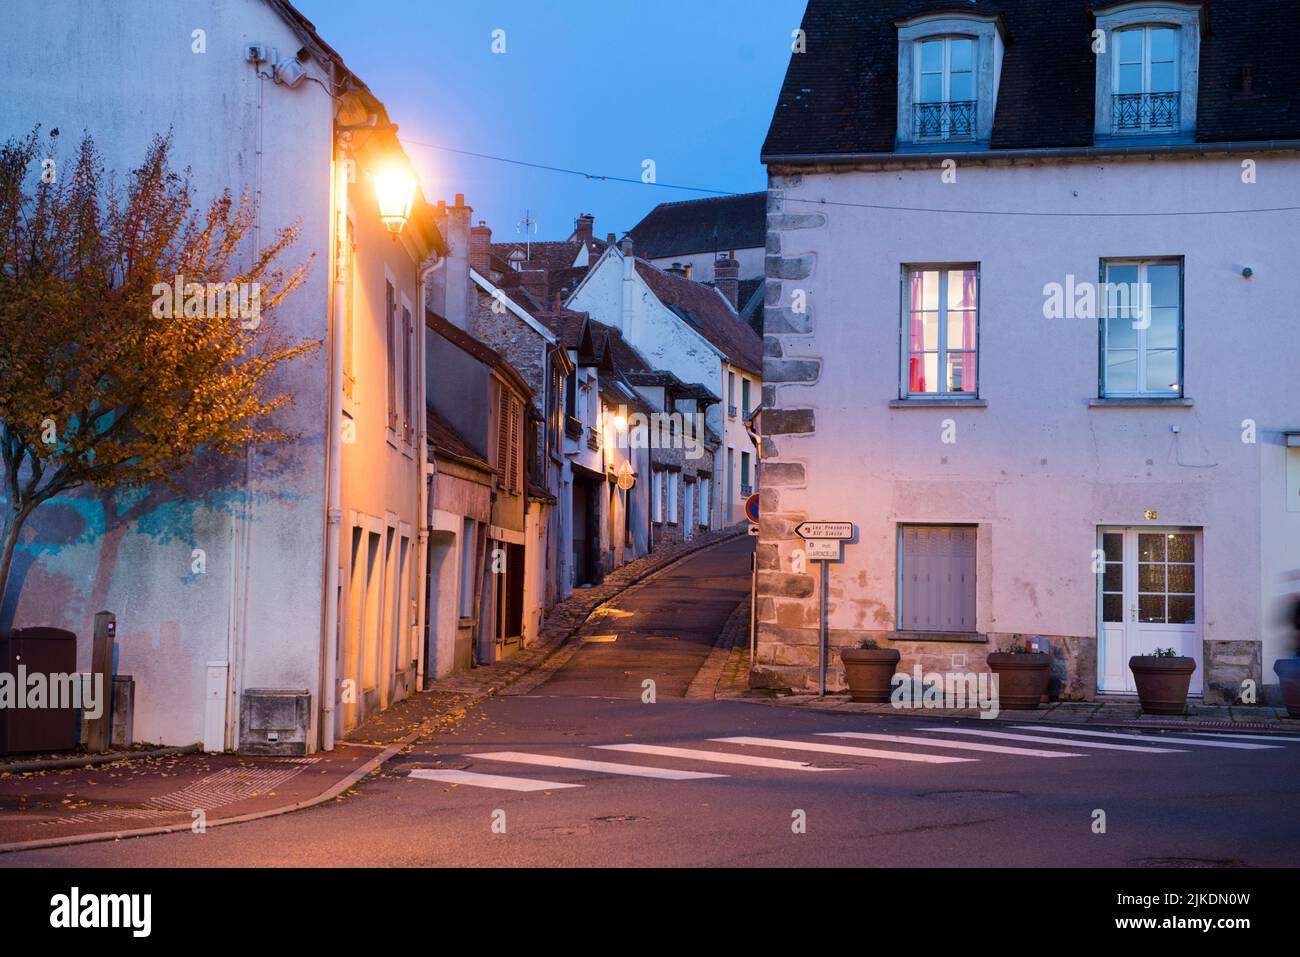 Village of Epernon, Eure-et-Loir department, Centre-Val-de-Loire region, France, Europe. Stock Photo